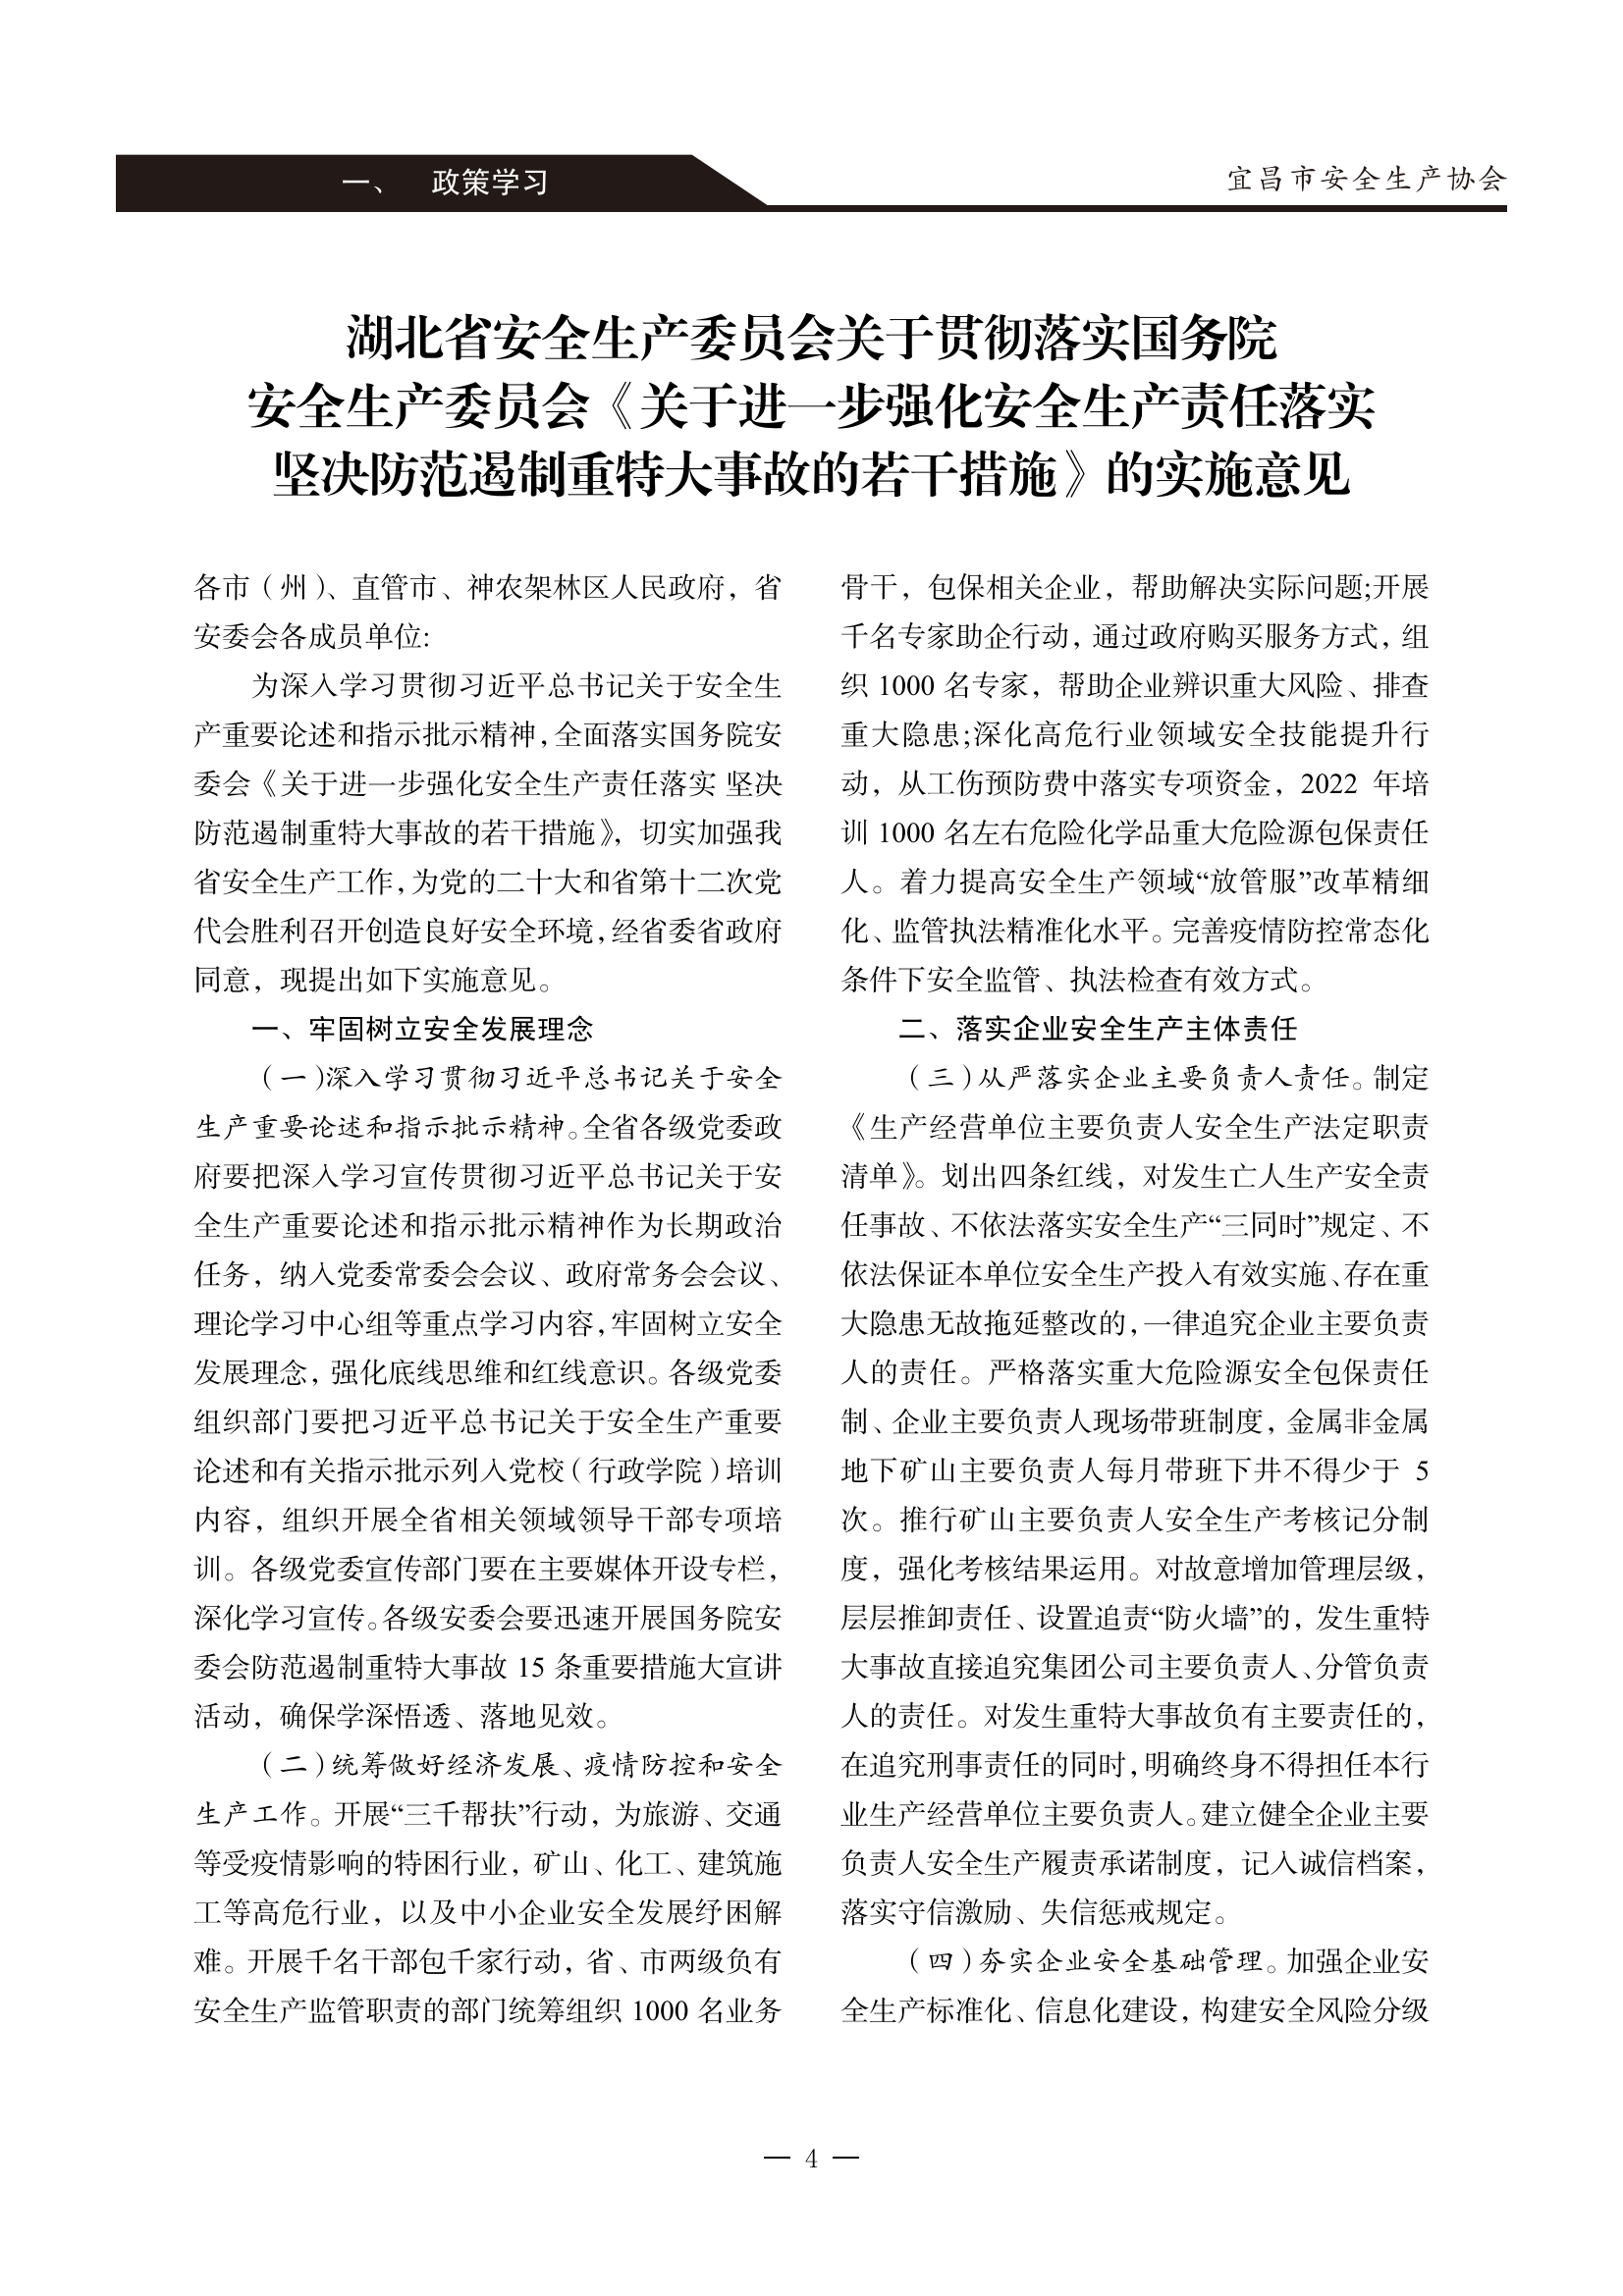 宜昌安全生产期刊第一期_09.png